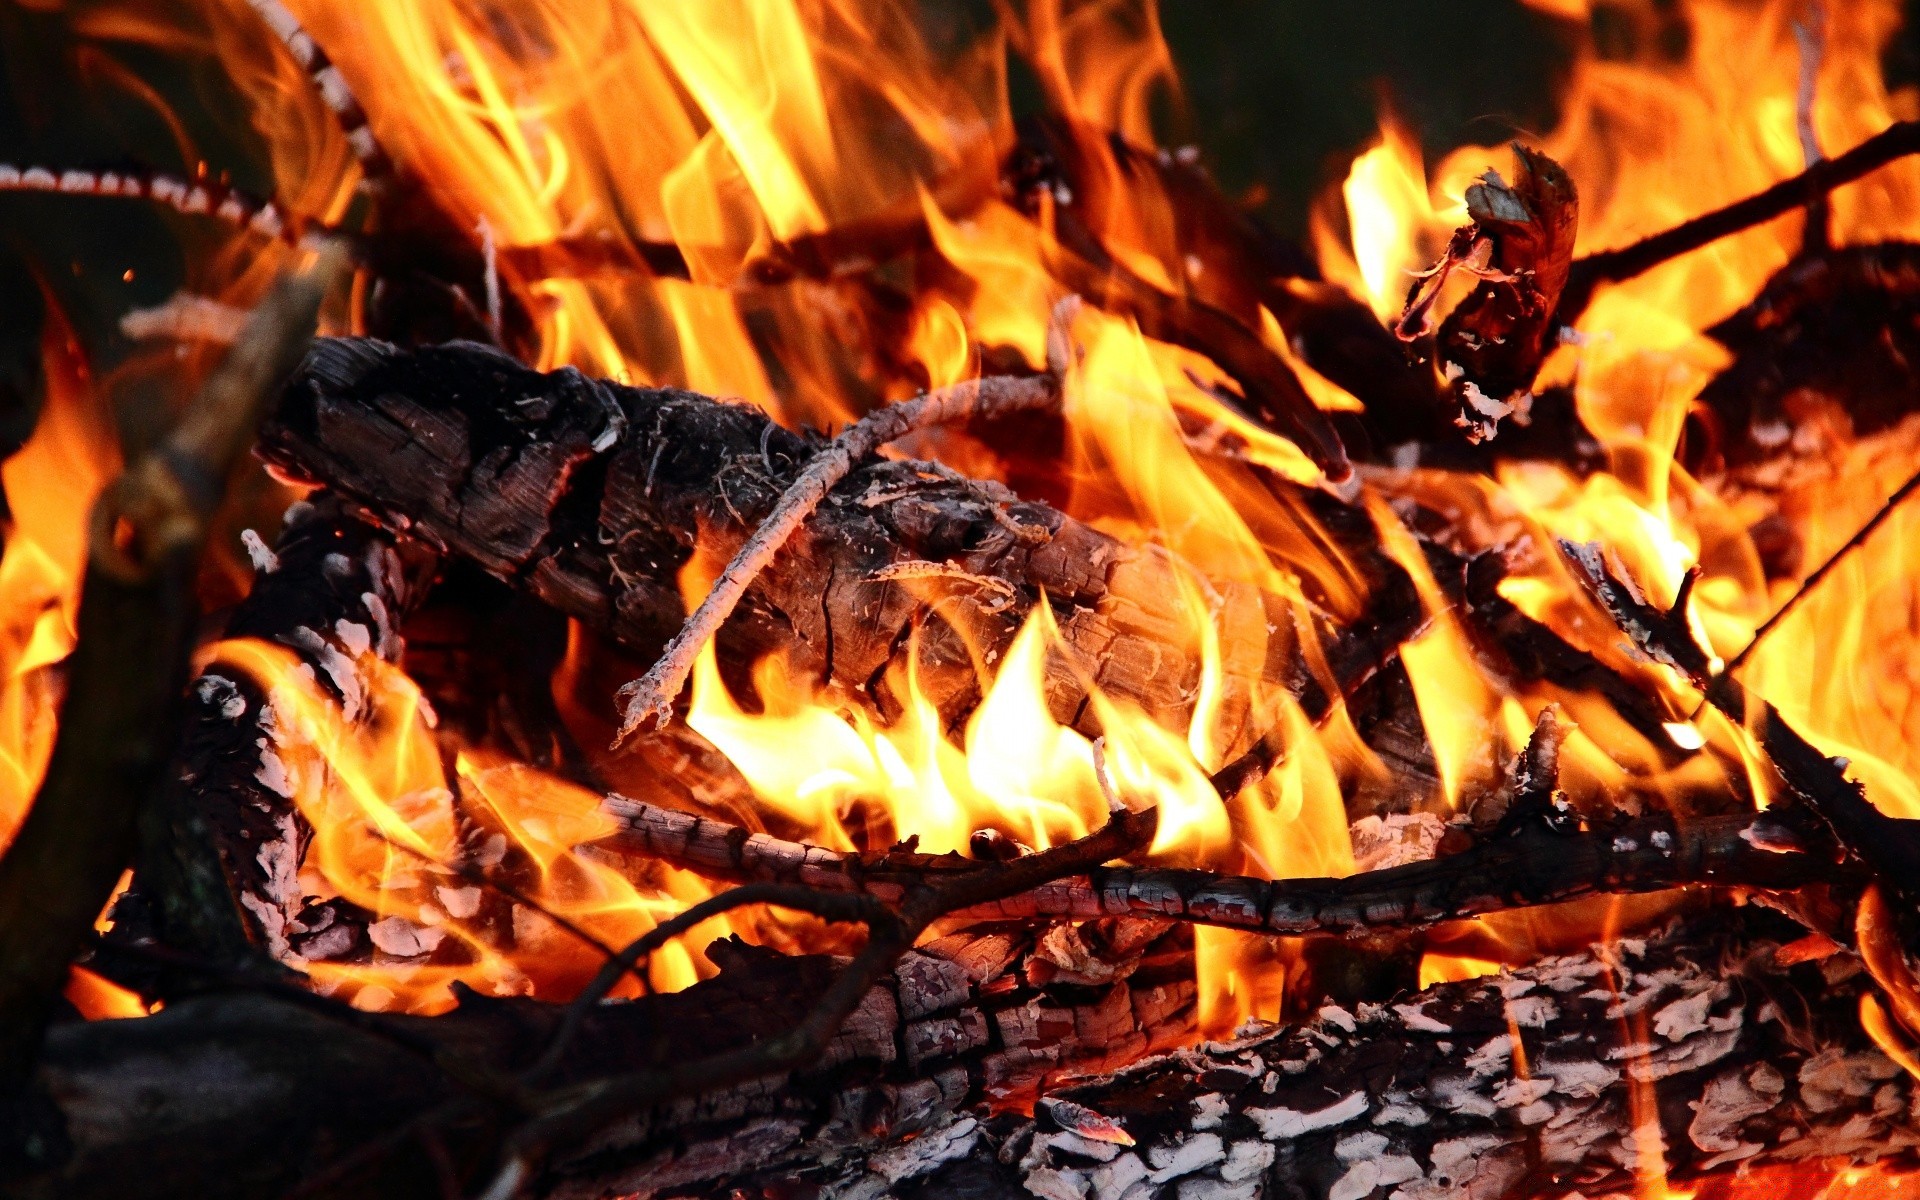 огонь пламя камин костра костер дрова уголь тепло сжечь уголь горячая инферно ясень тепло блейз дым лагерь топлива зажечь легковоспламеняющиеся пожар